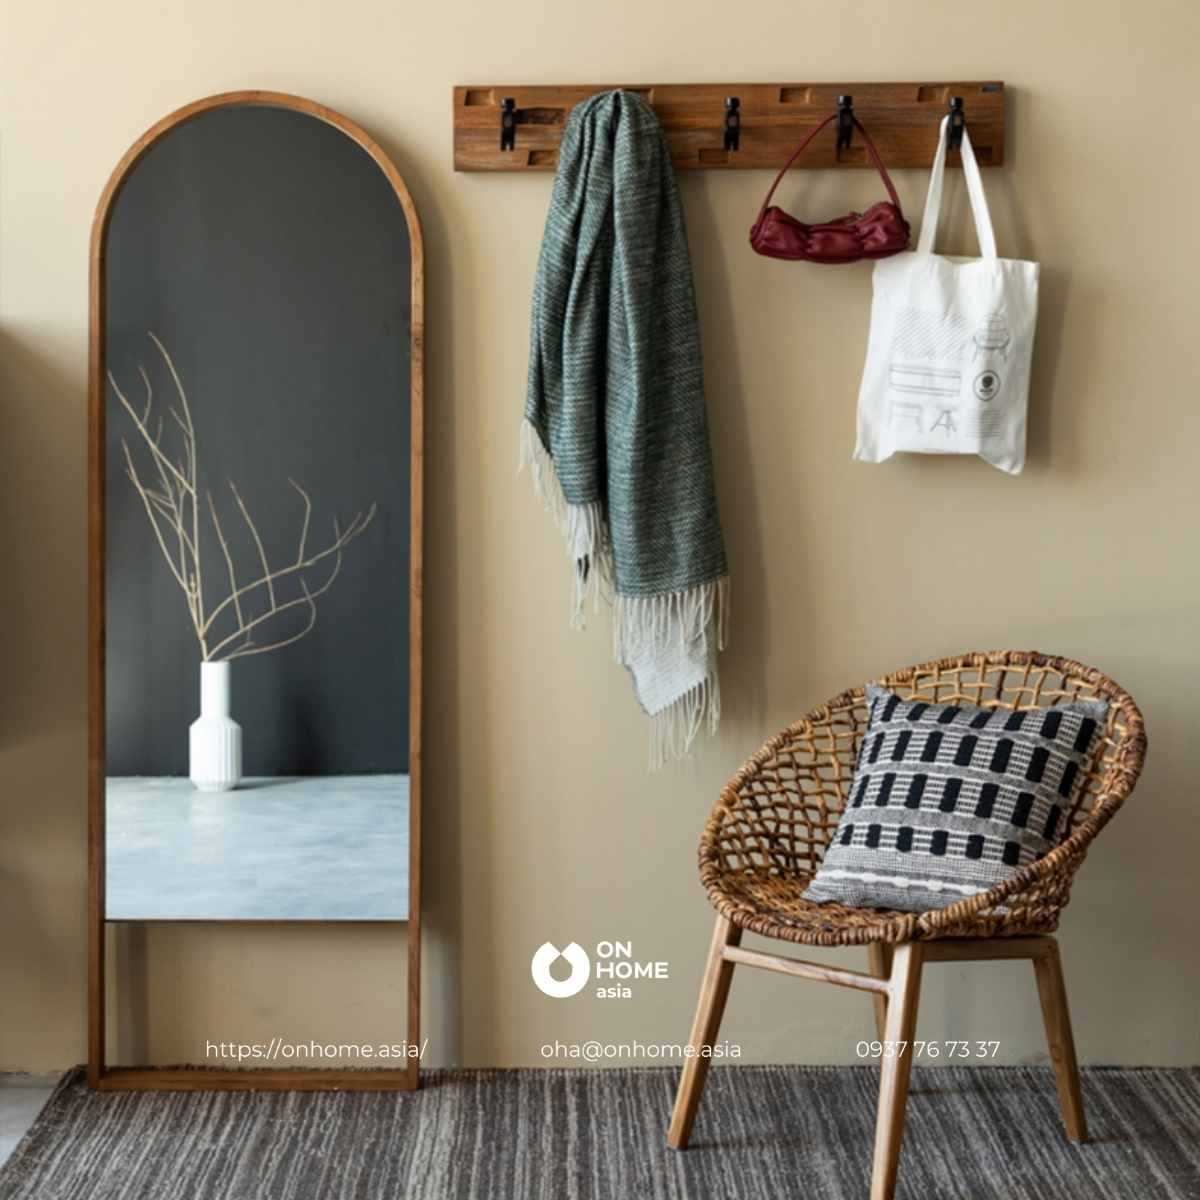 Gương trang trí phòng ngủ khung gỗ đơn giản mà đẹp